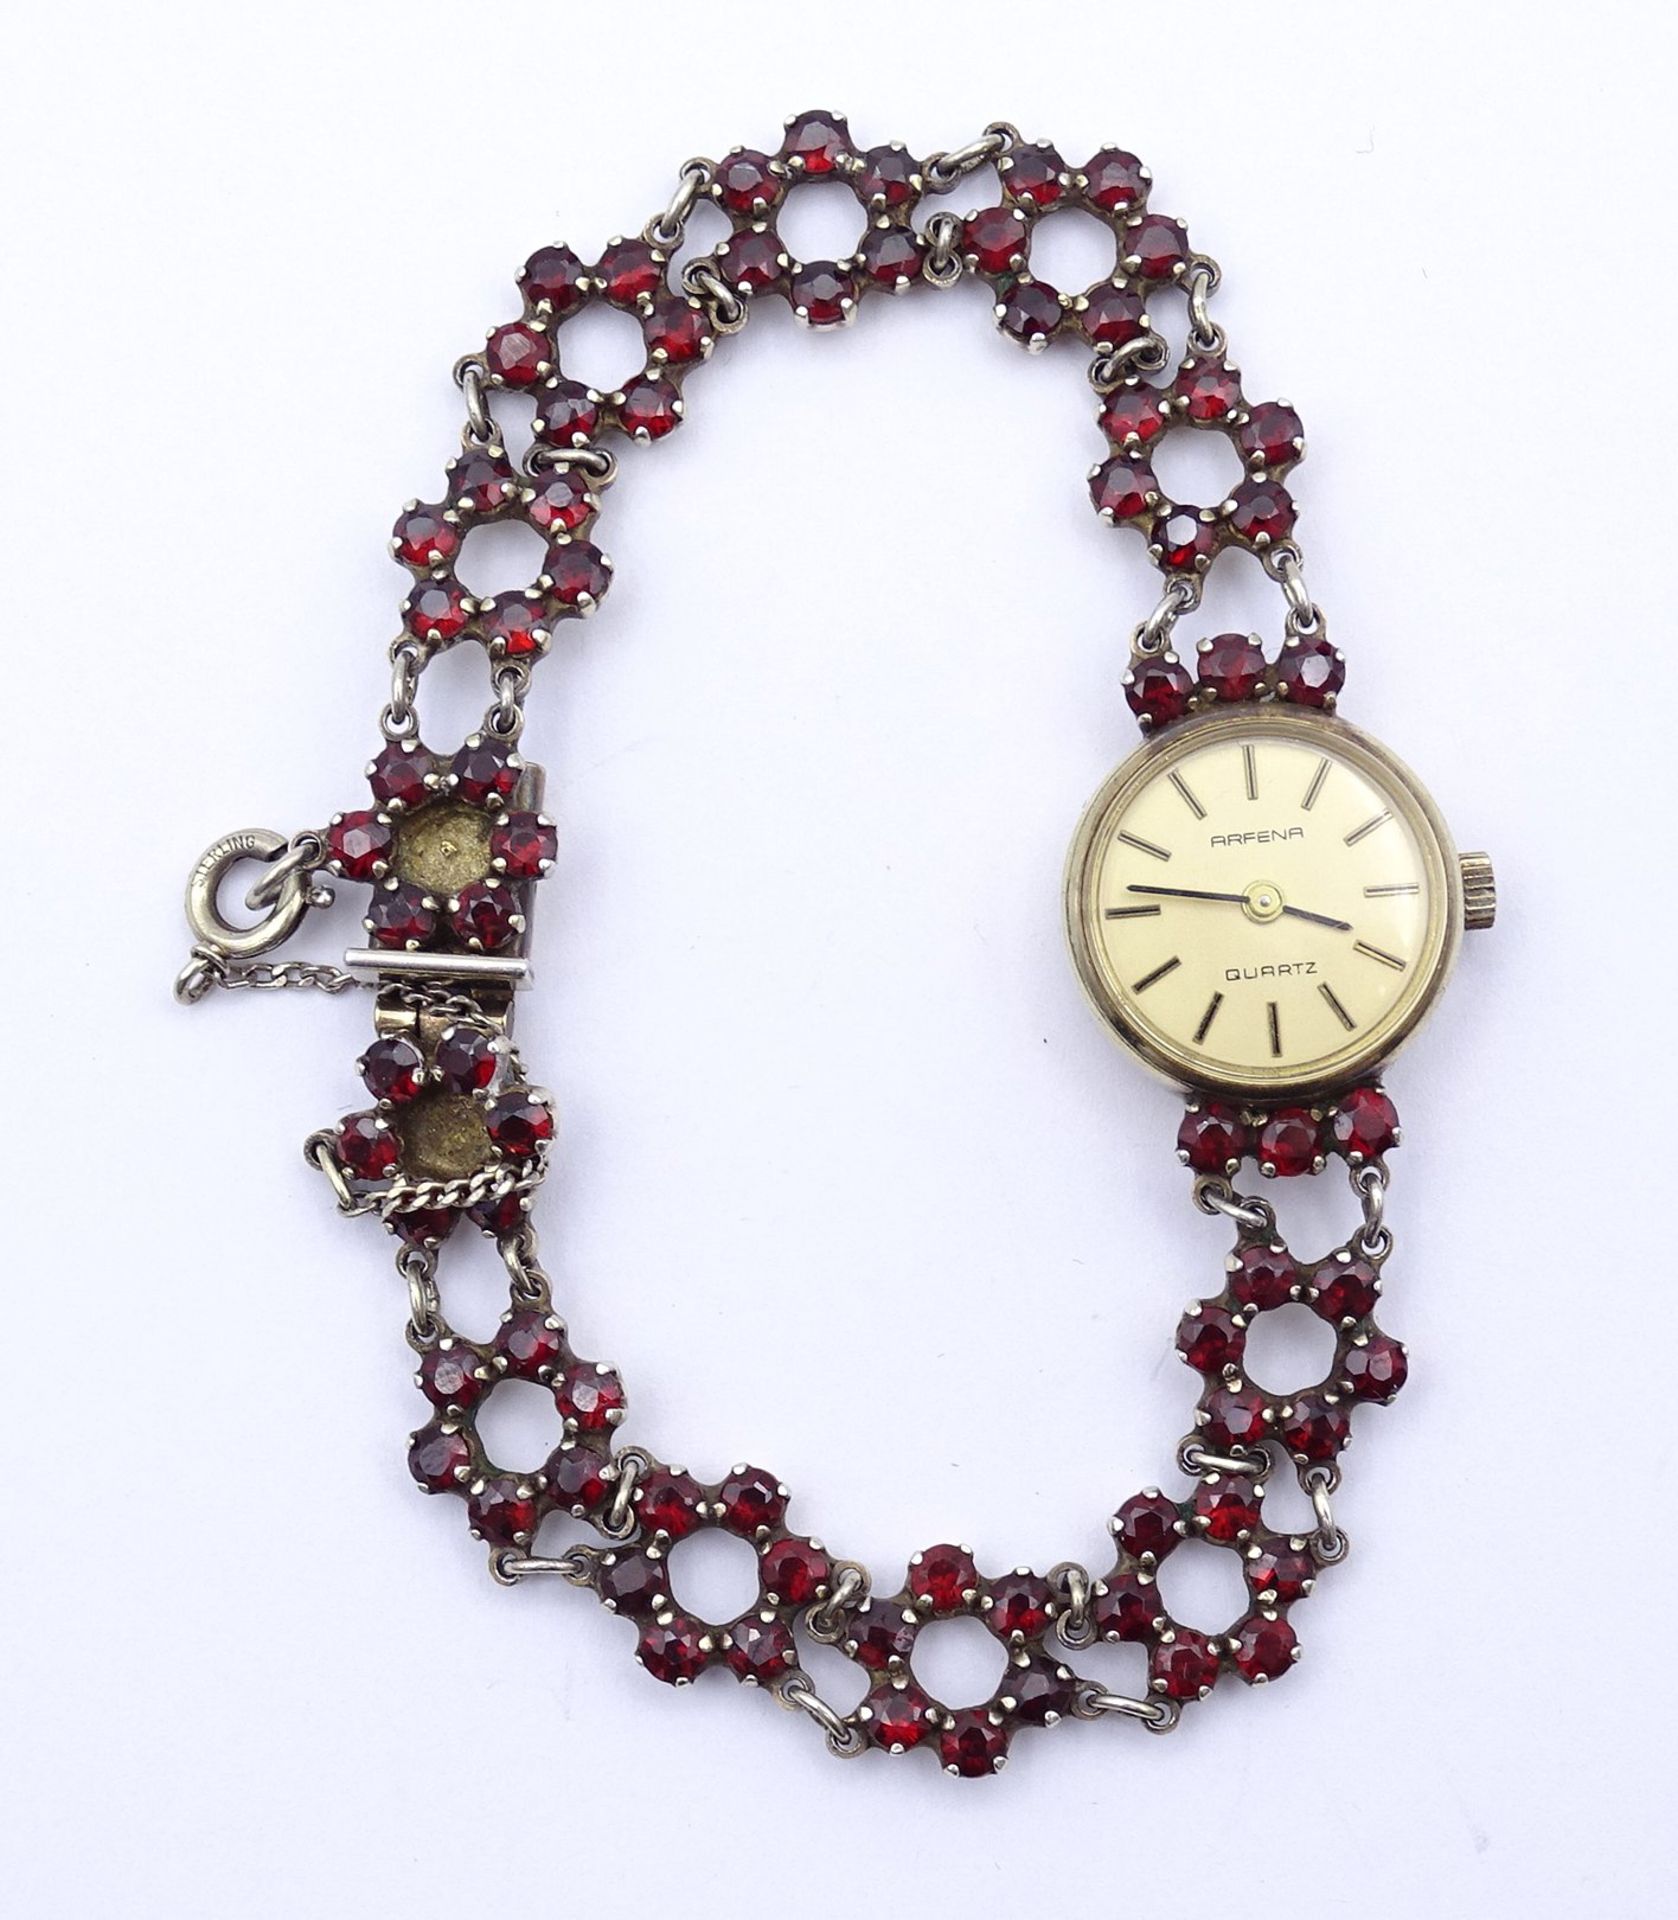 Damen Armbanduhr Arfena, Granat besatz, Vollsilber 0.925- vergoldet, Quartzwerk, D. 18mm, 18,6g.